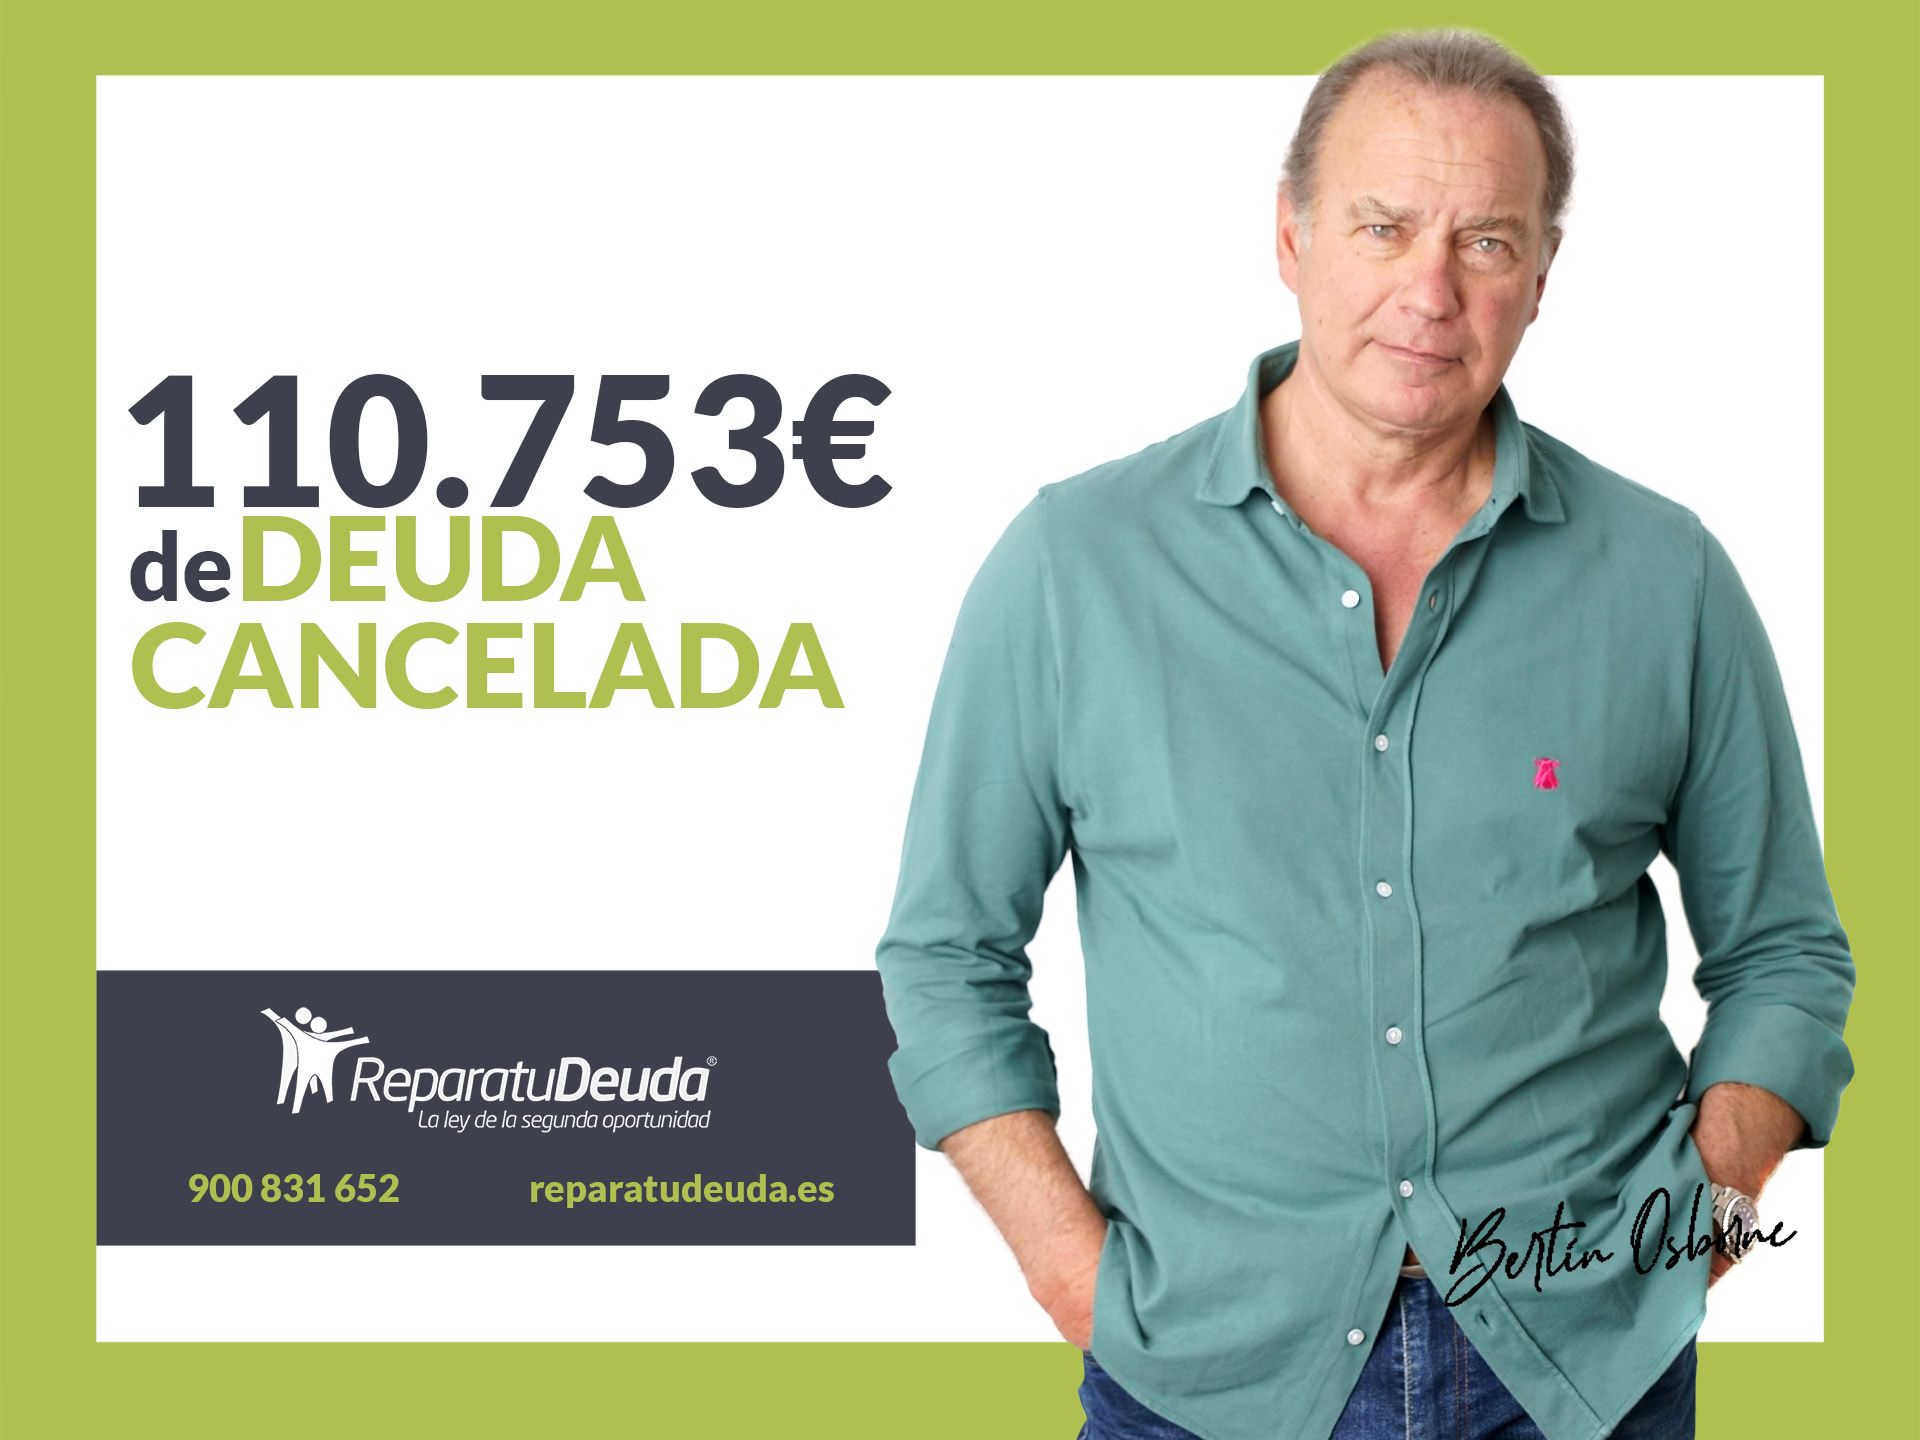 Repara tu Deuda cancela 110.753? en Salamanca con la Ley de la Segunda Oportunidad